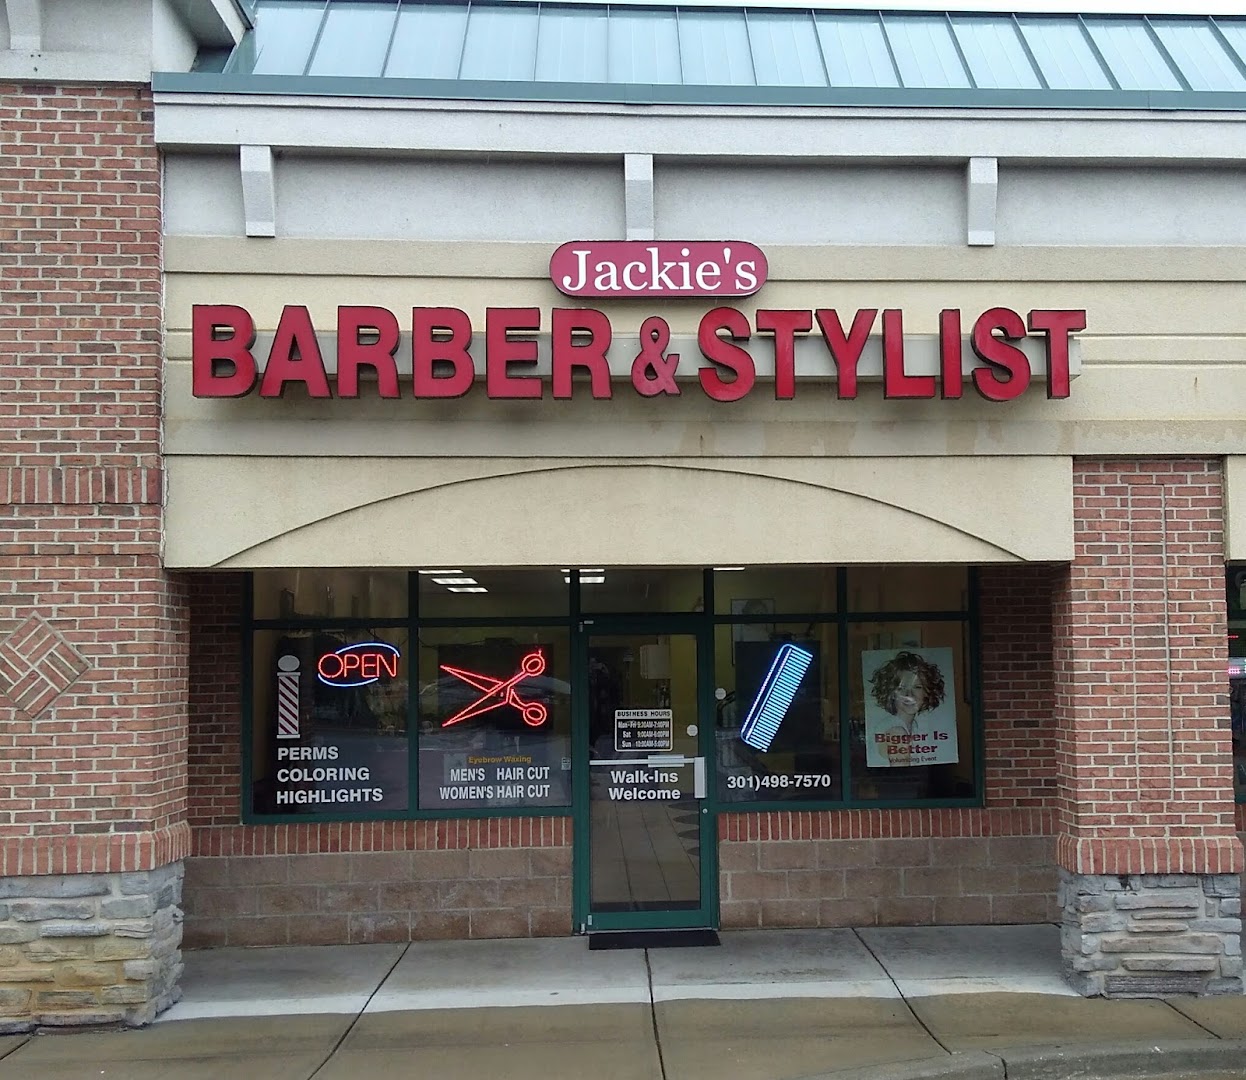 Jackie's Barber & Stylist Inc